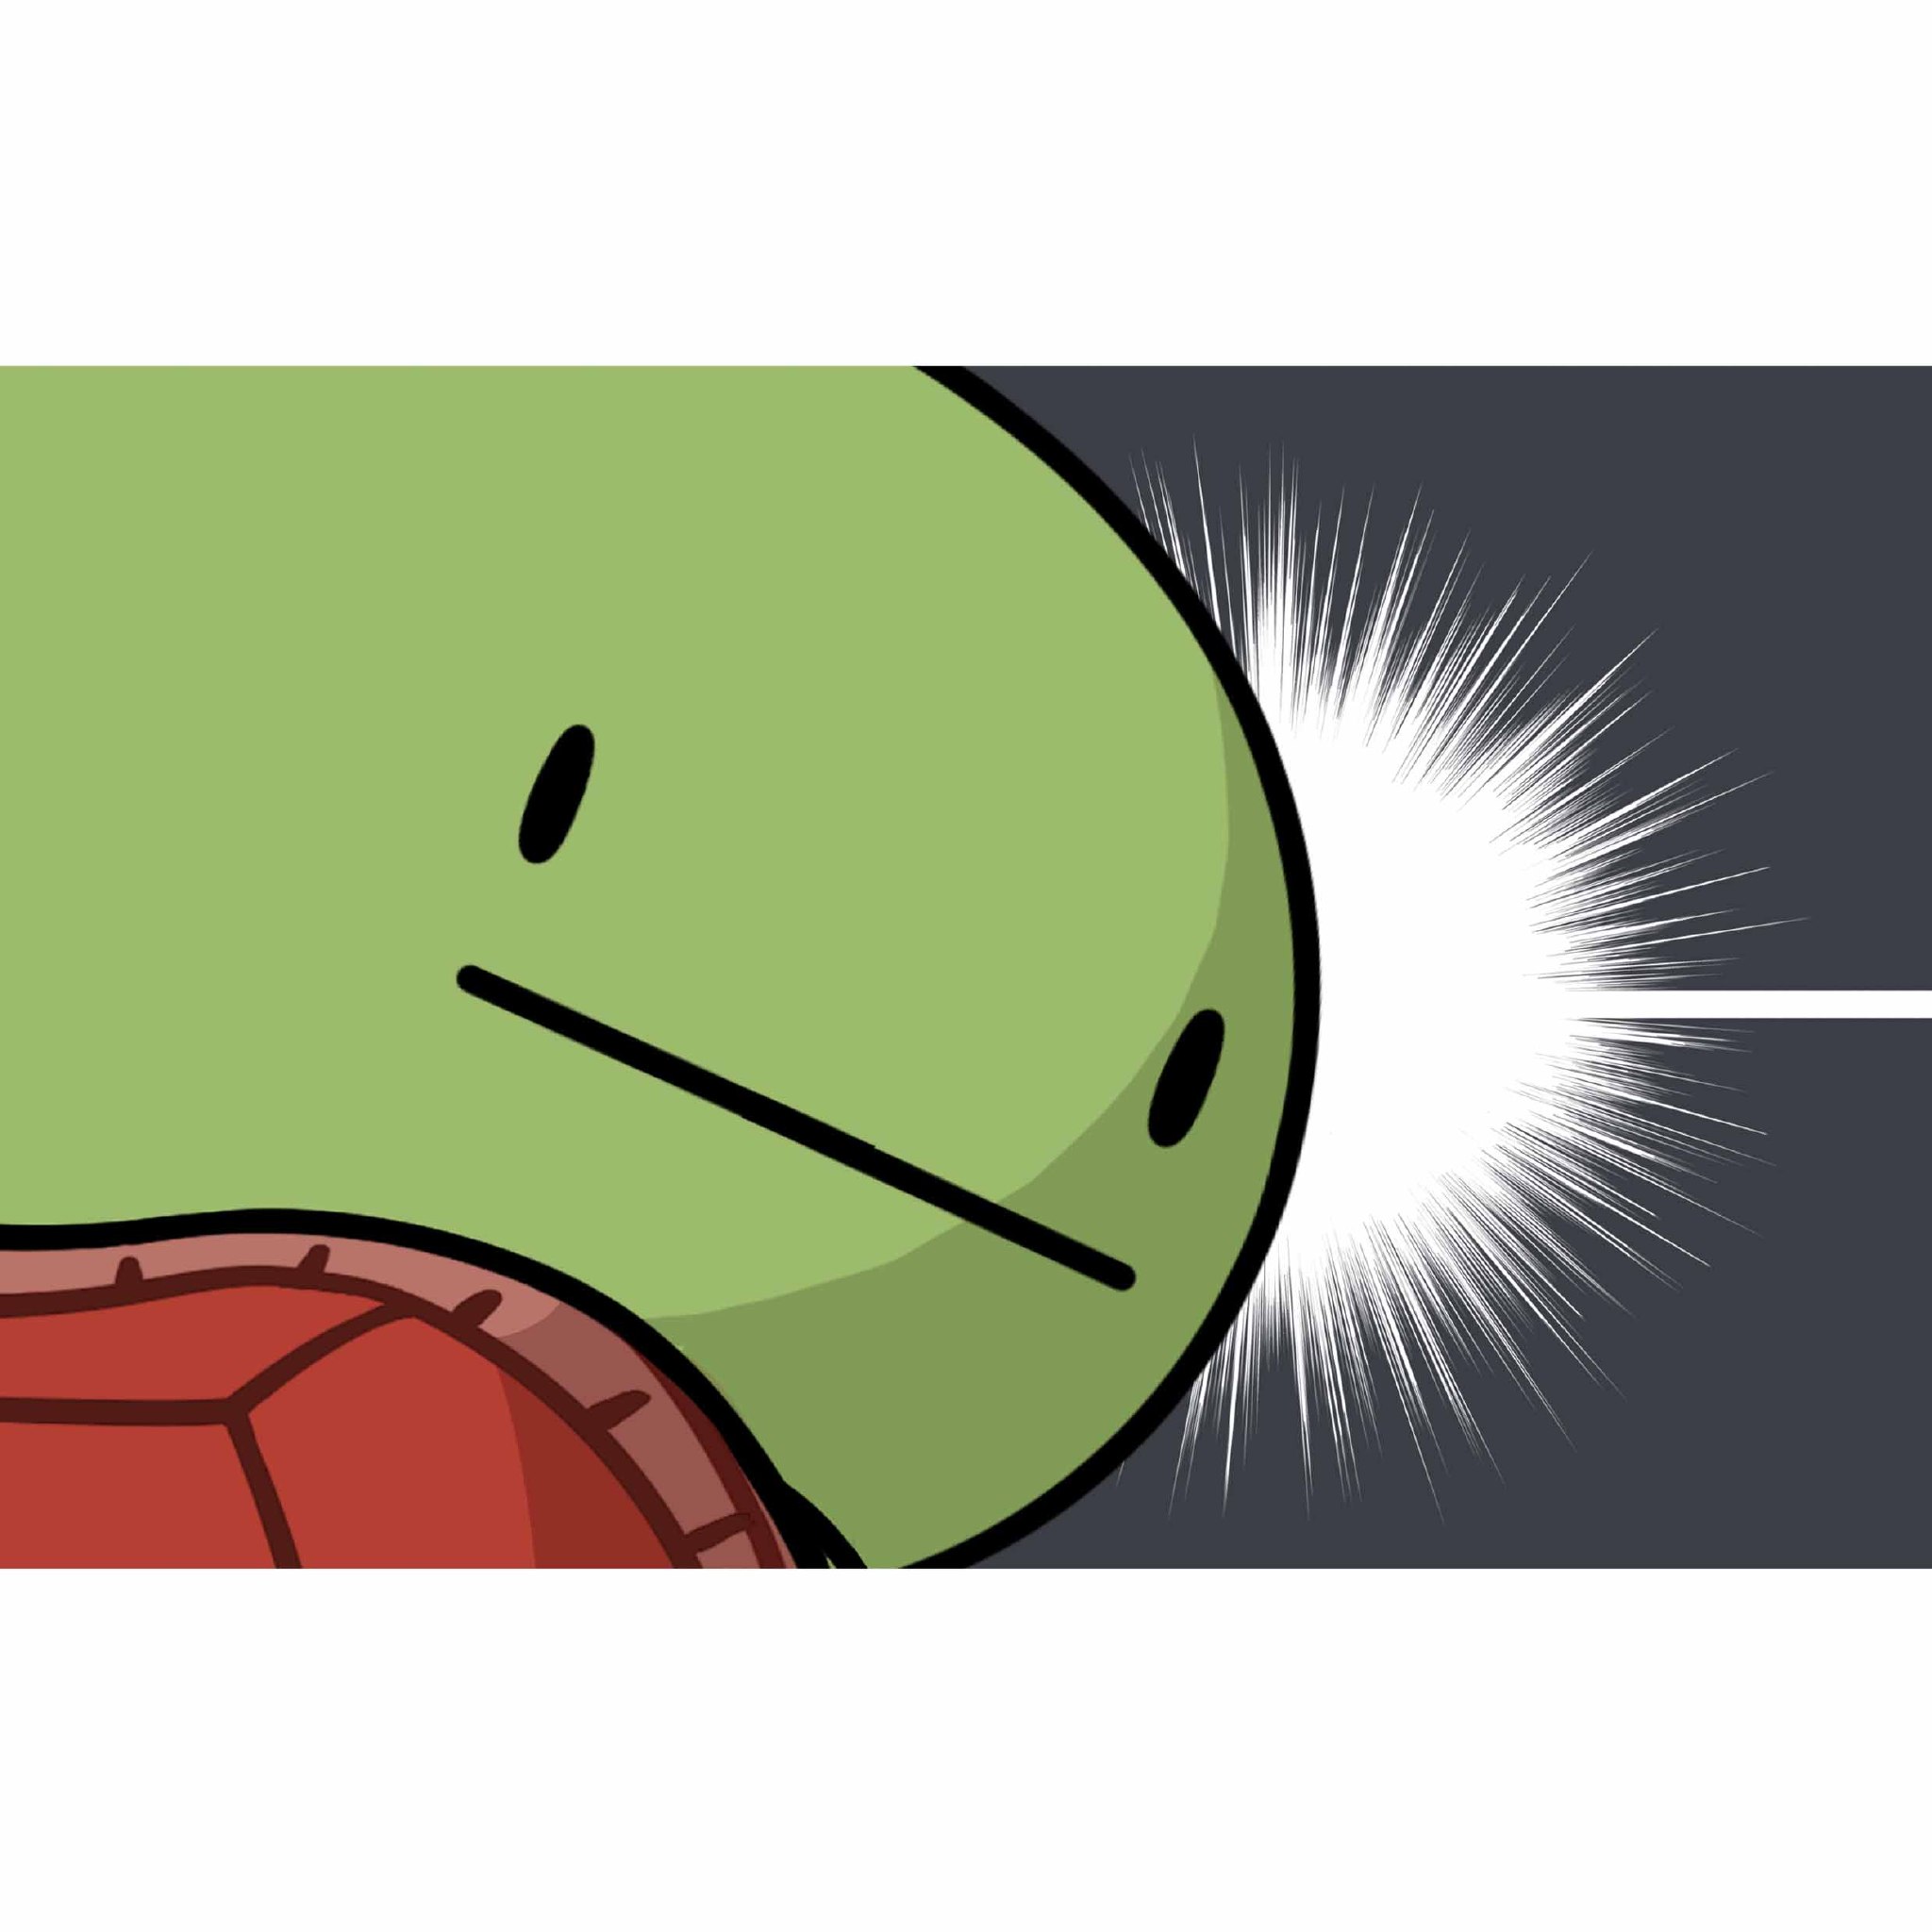 绿头龟表情包图片